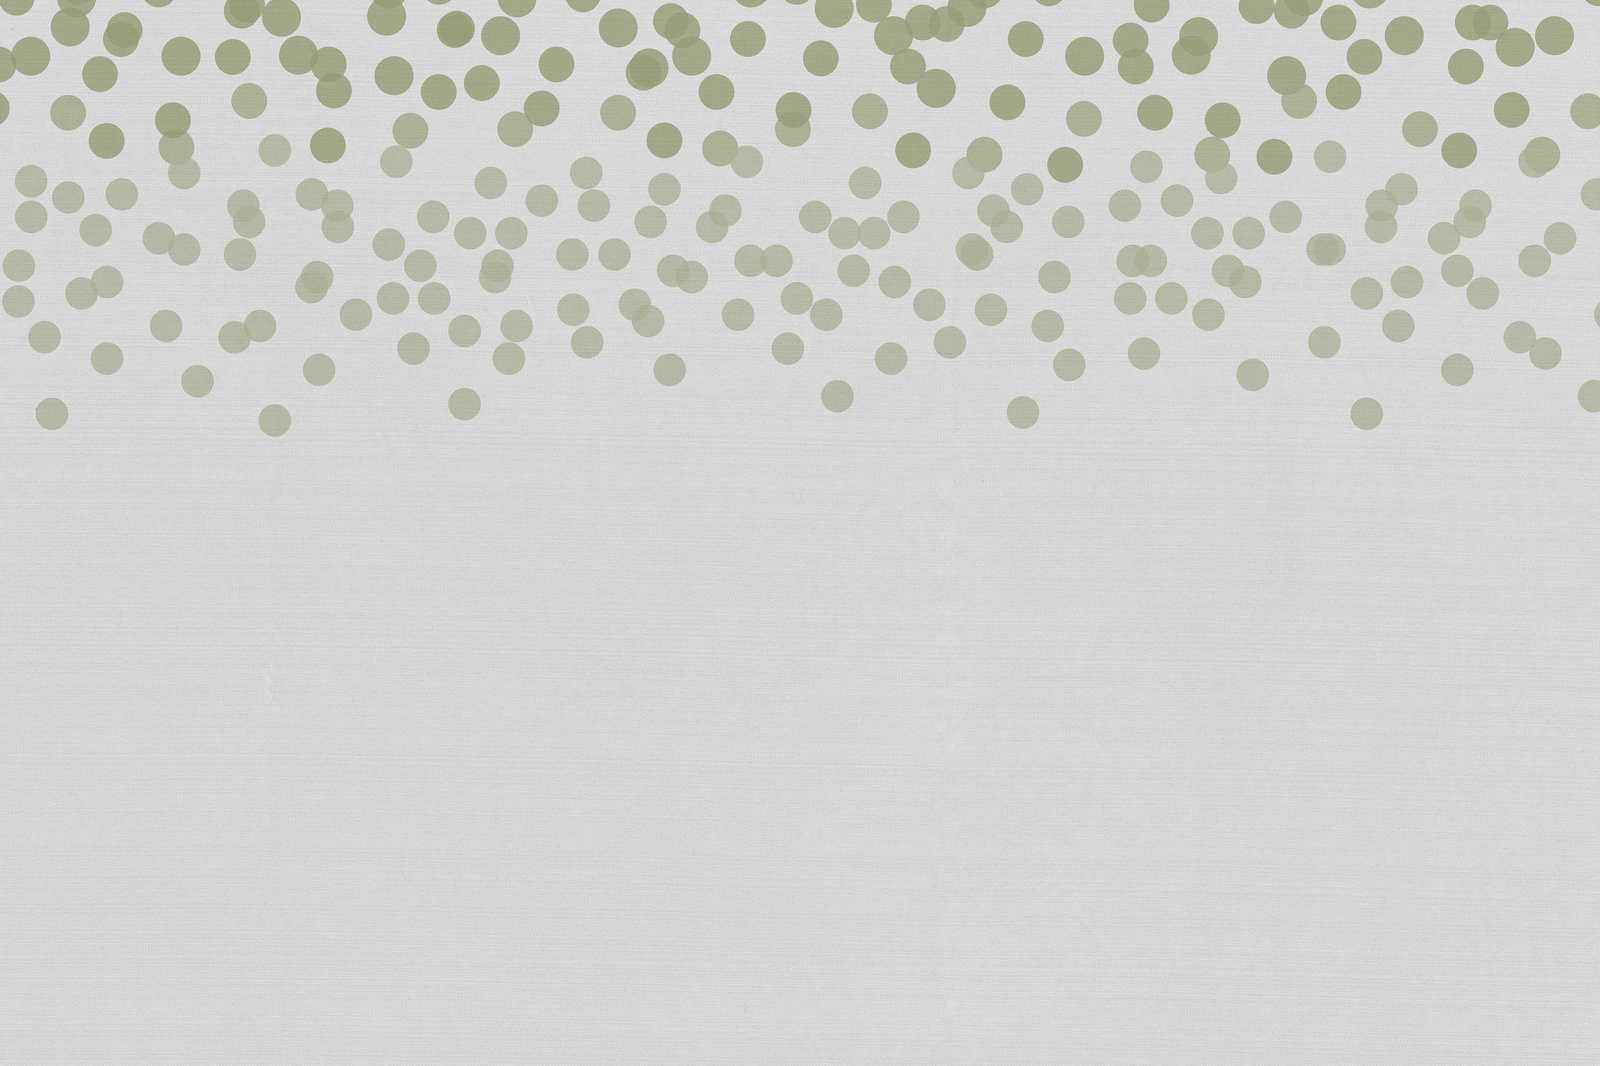             Leinwandbild mit dezenten Punkt-Muster | grün, grau – 0,90 m x 0,60 m
        